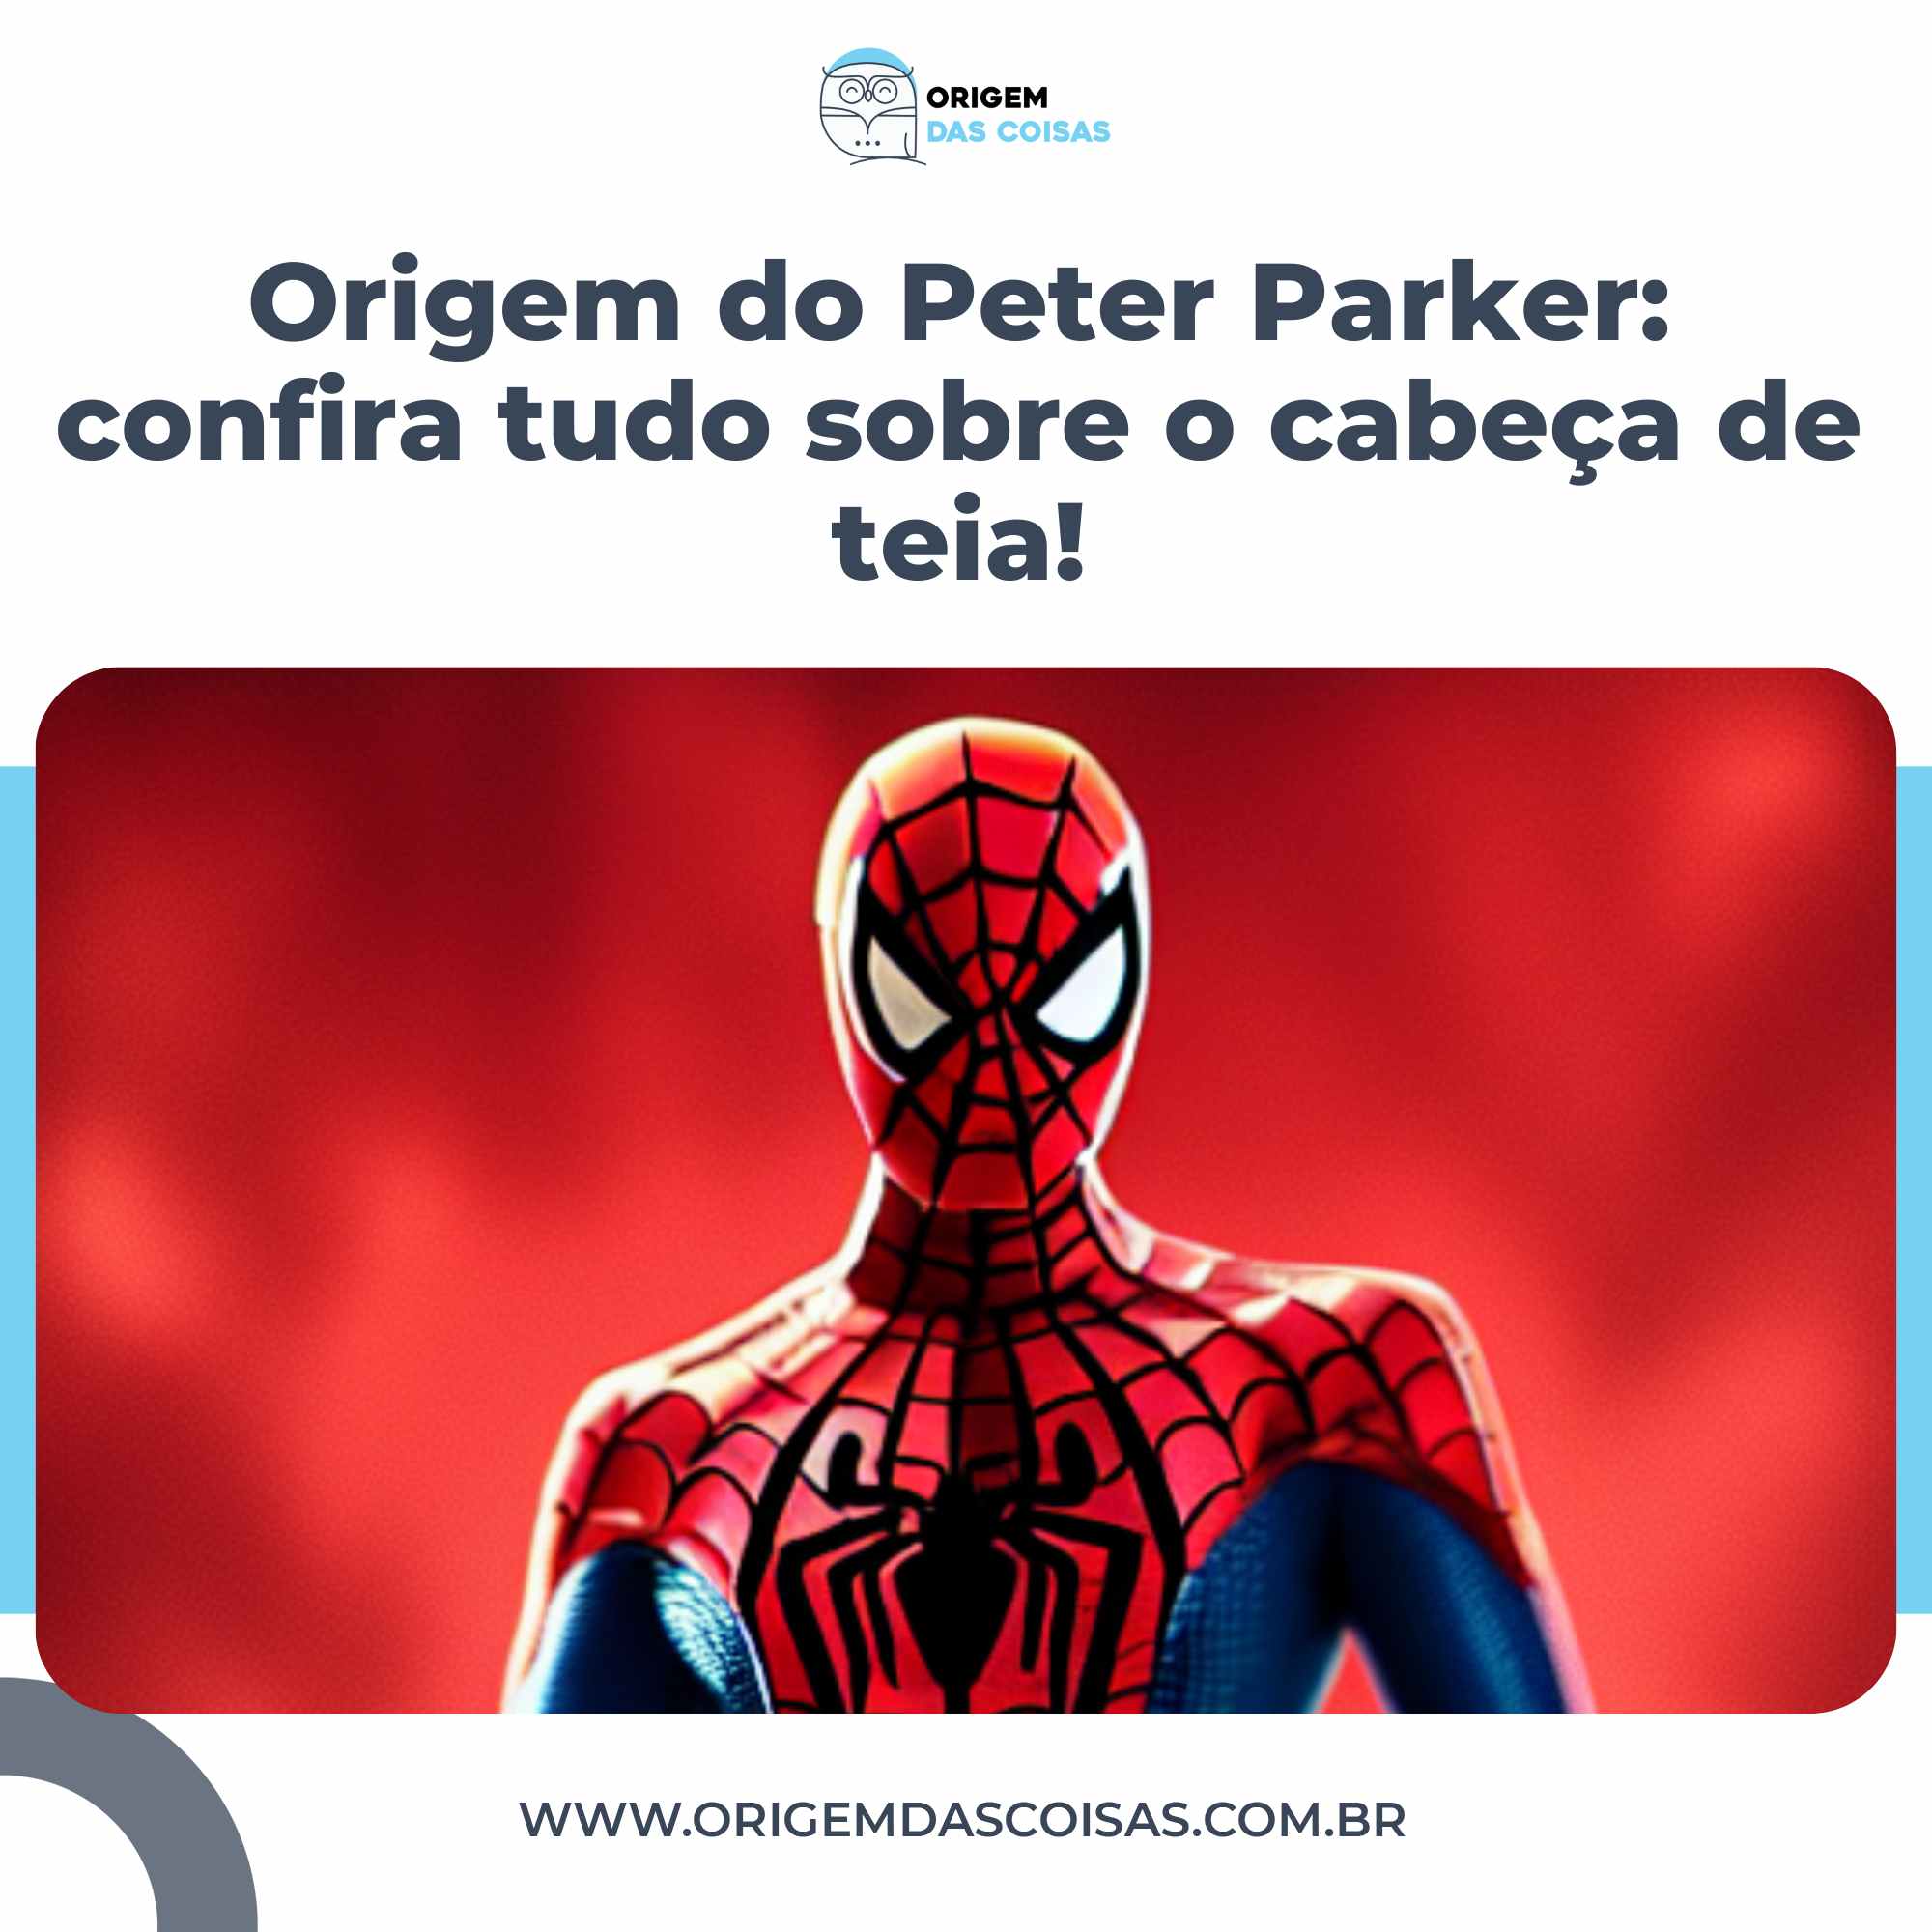 Origem do Peter Parker confira tudo sobre o cabeça de teia!